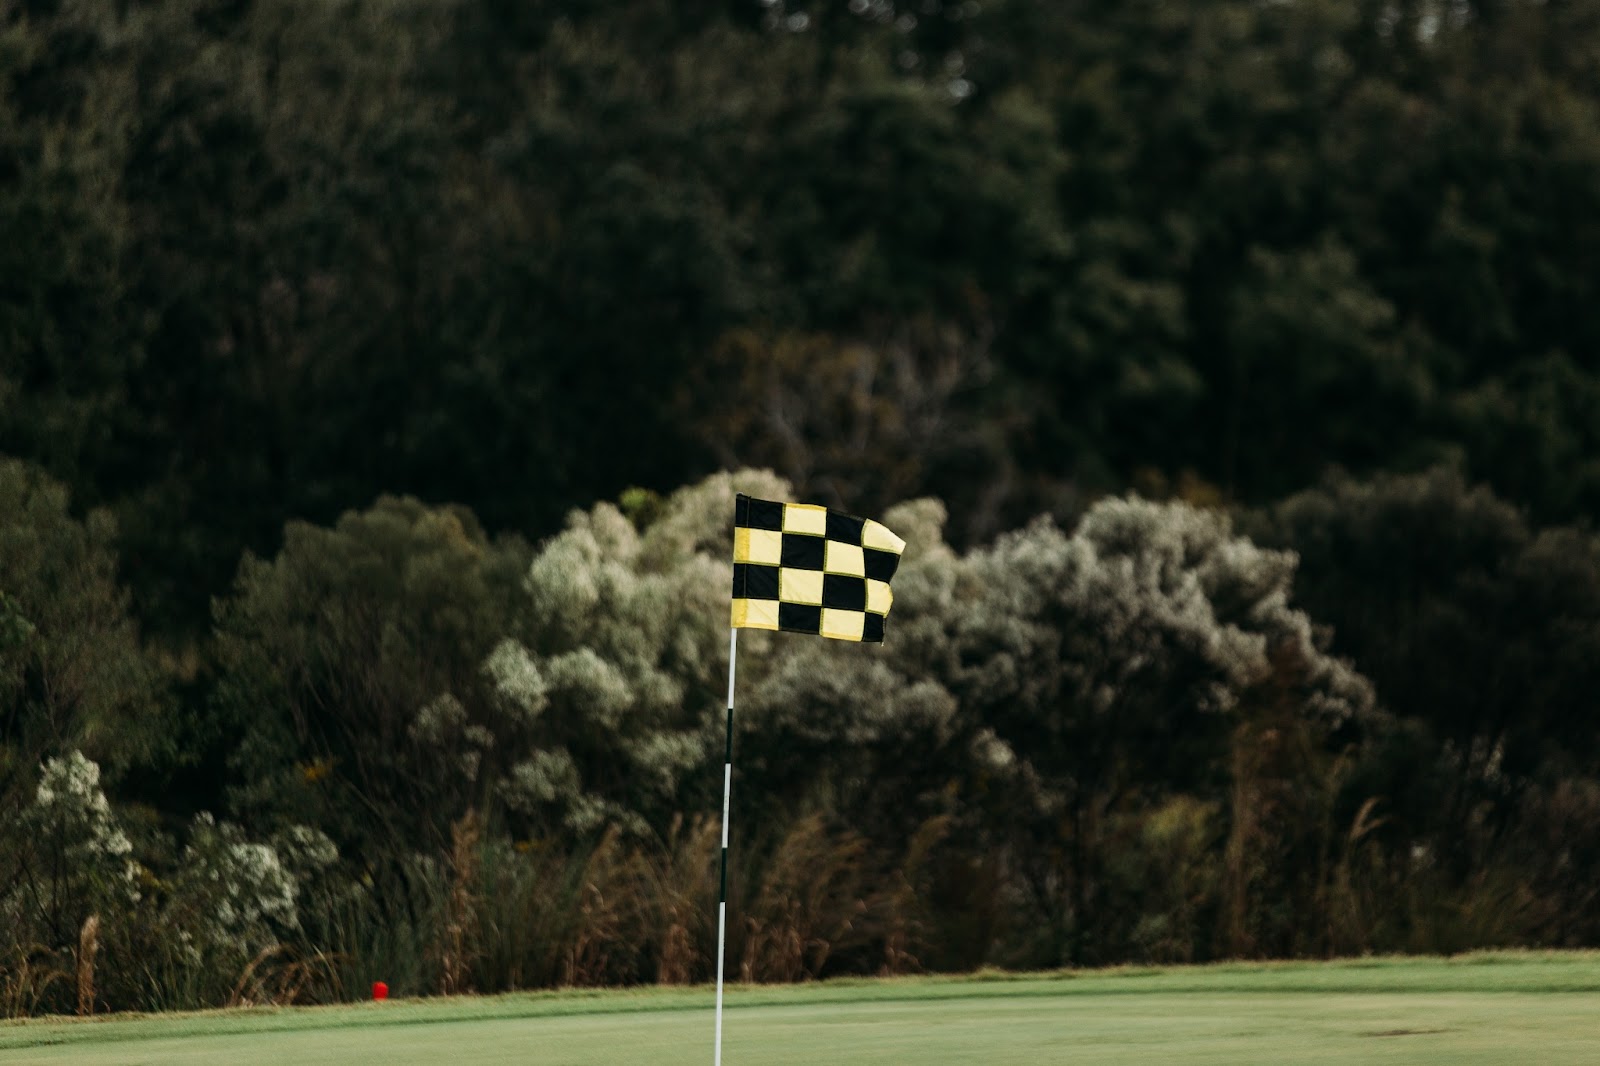 golf flag and hole